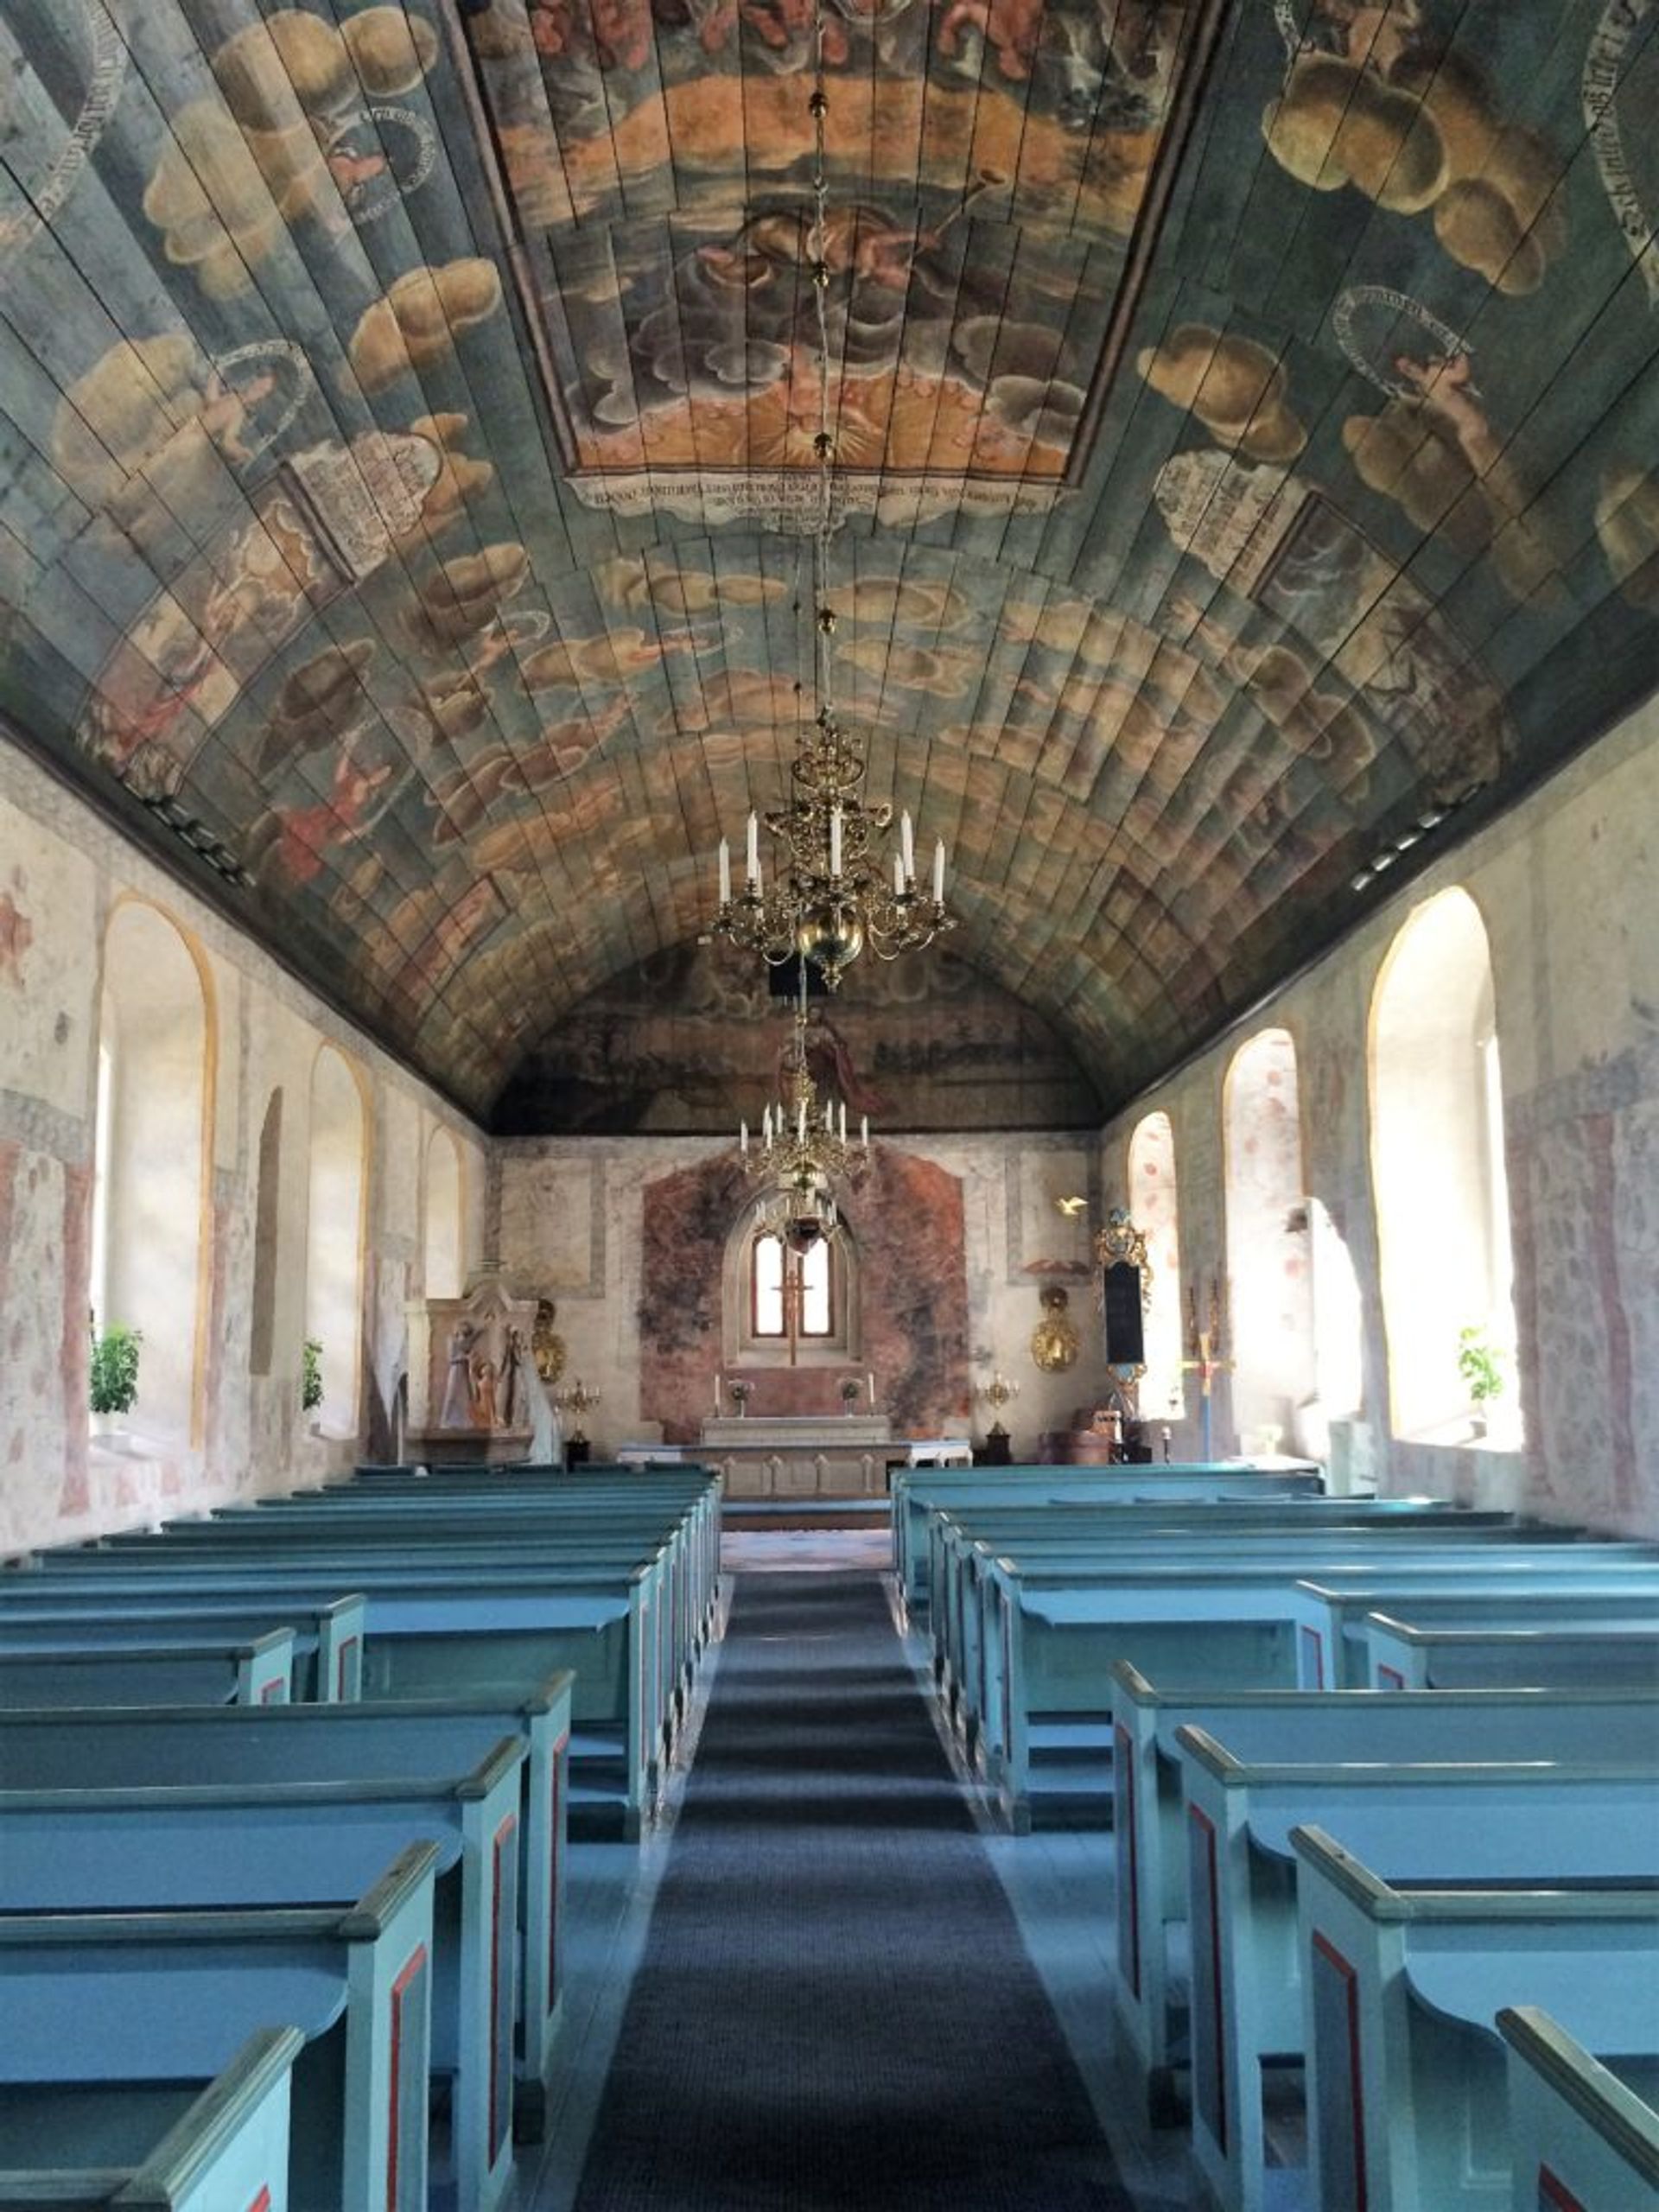 A small church.